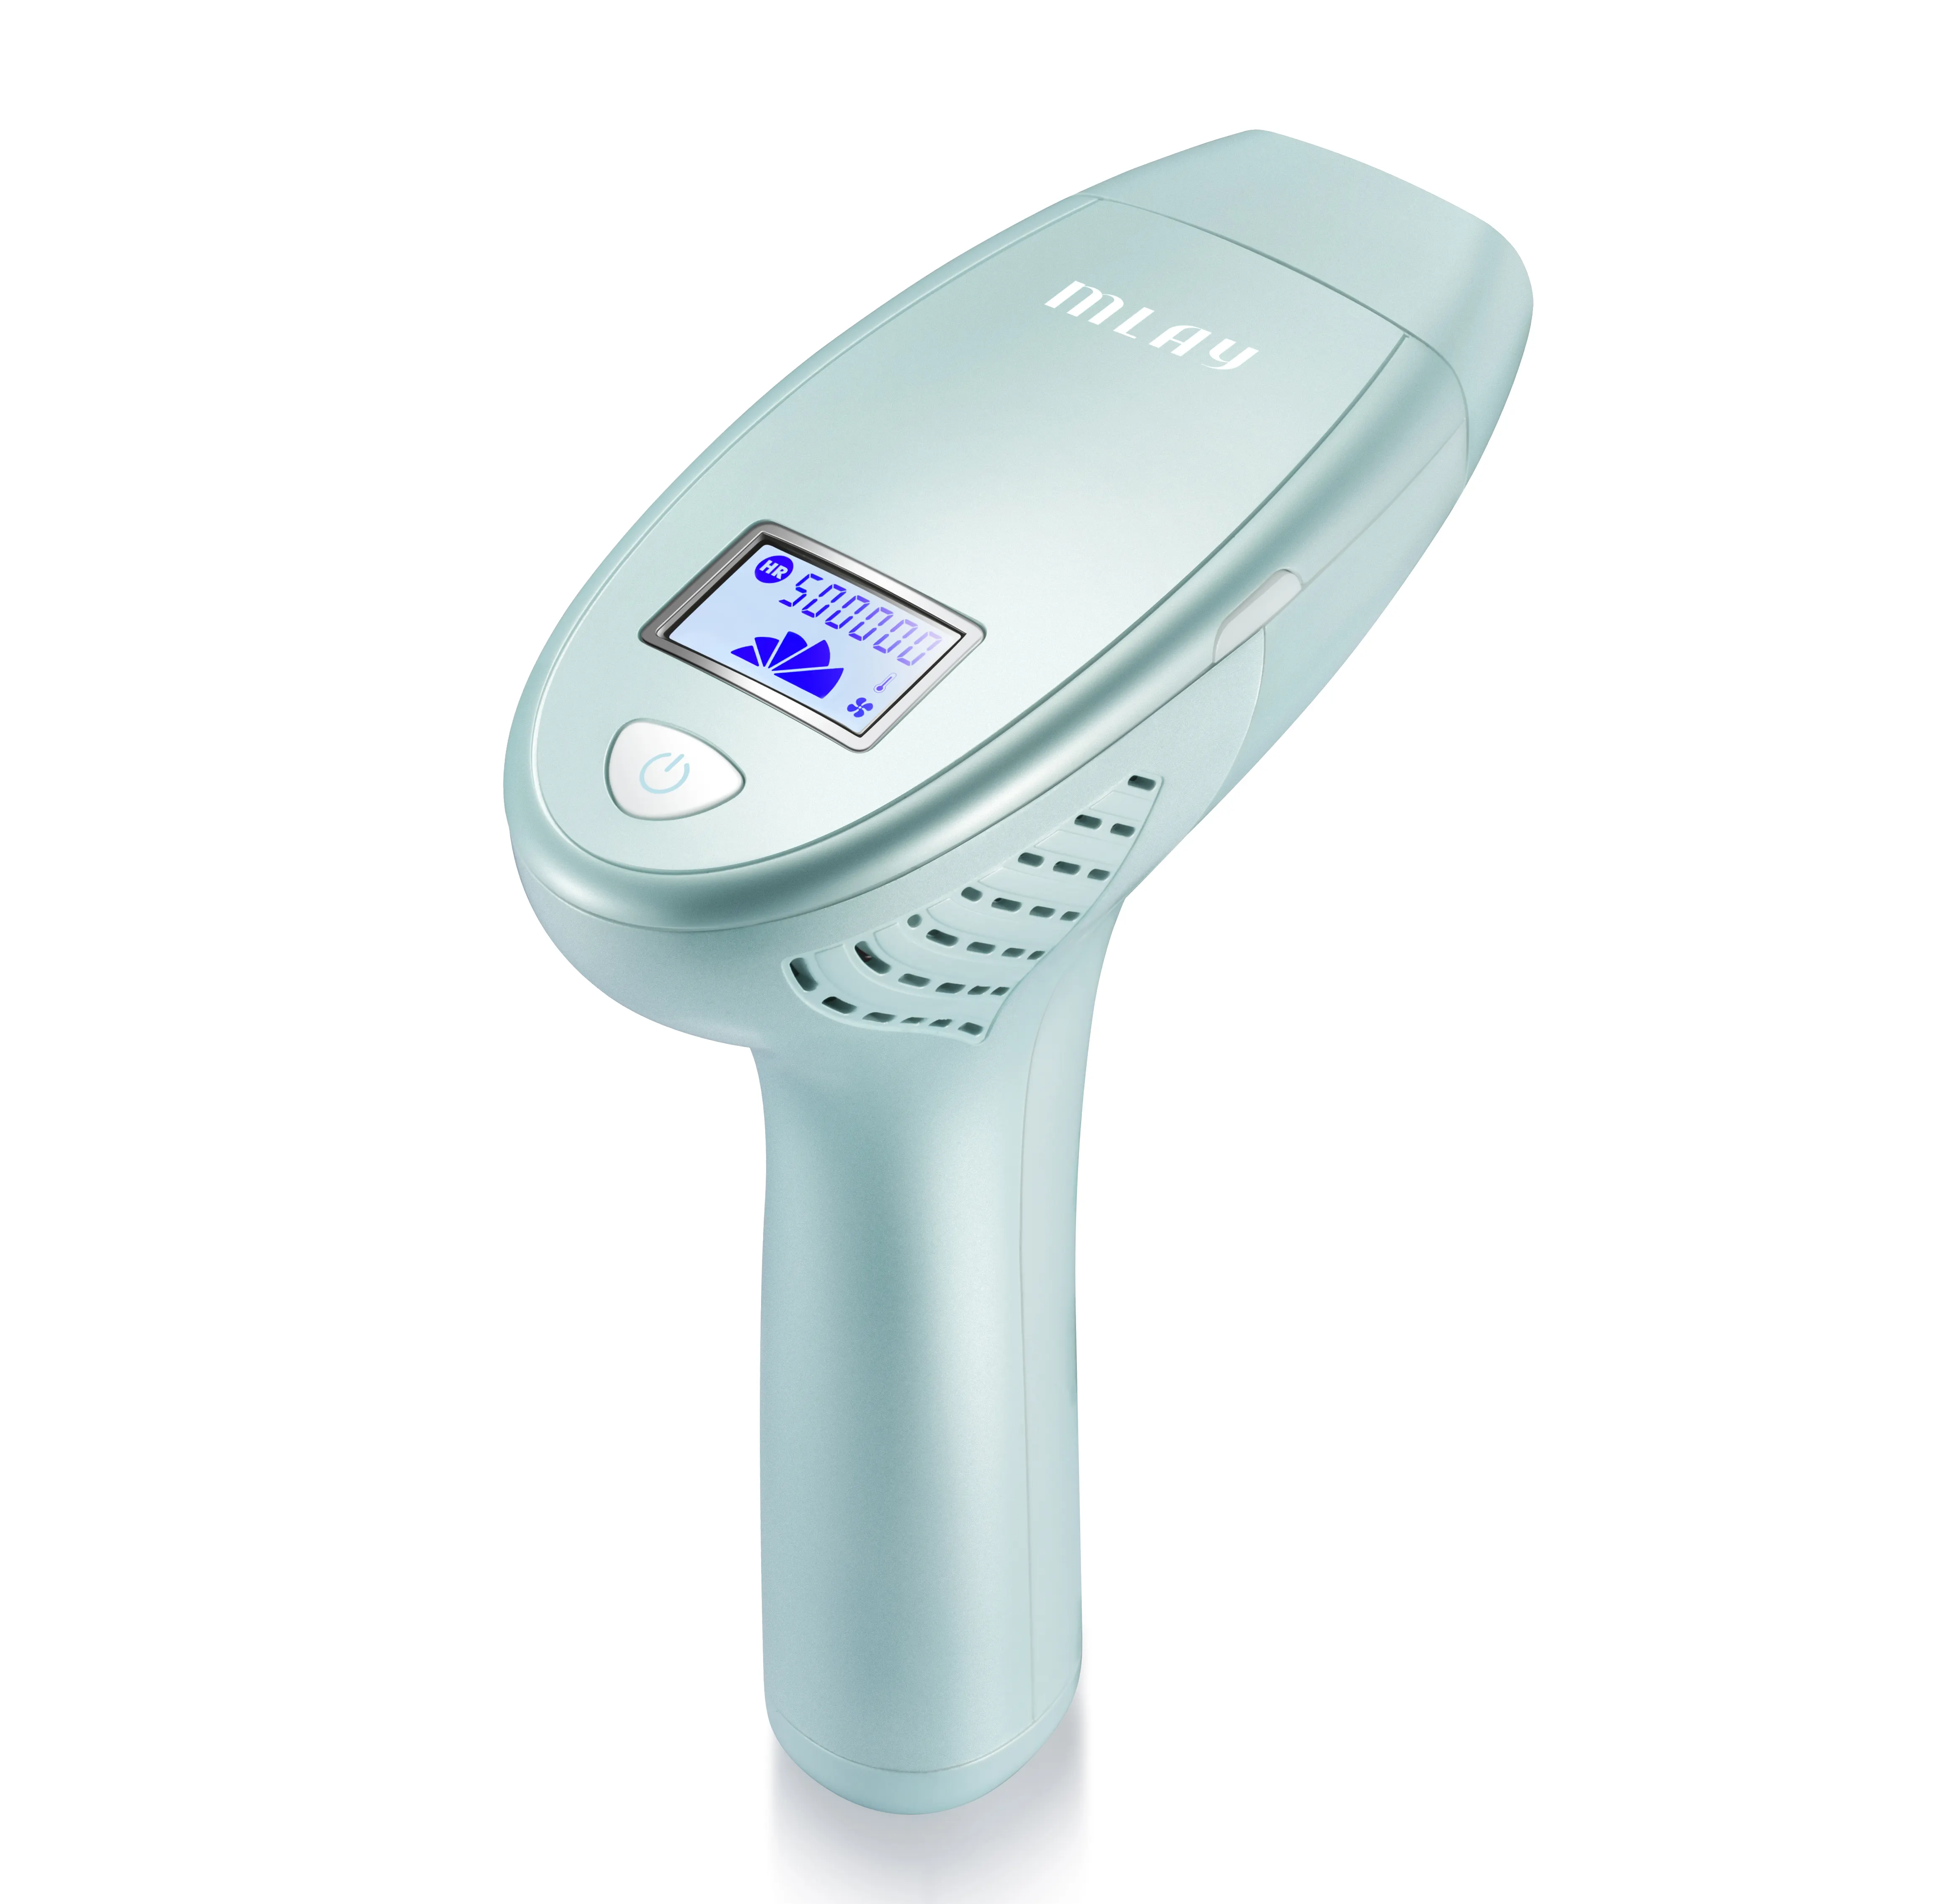 Venta caliente Mlay Handheld IPL Dispositivo de depilación Láser portátil para el rejuvenecimiento permanente de la piel para el área del bikini